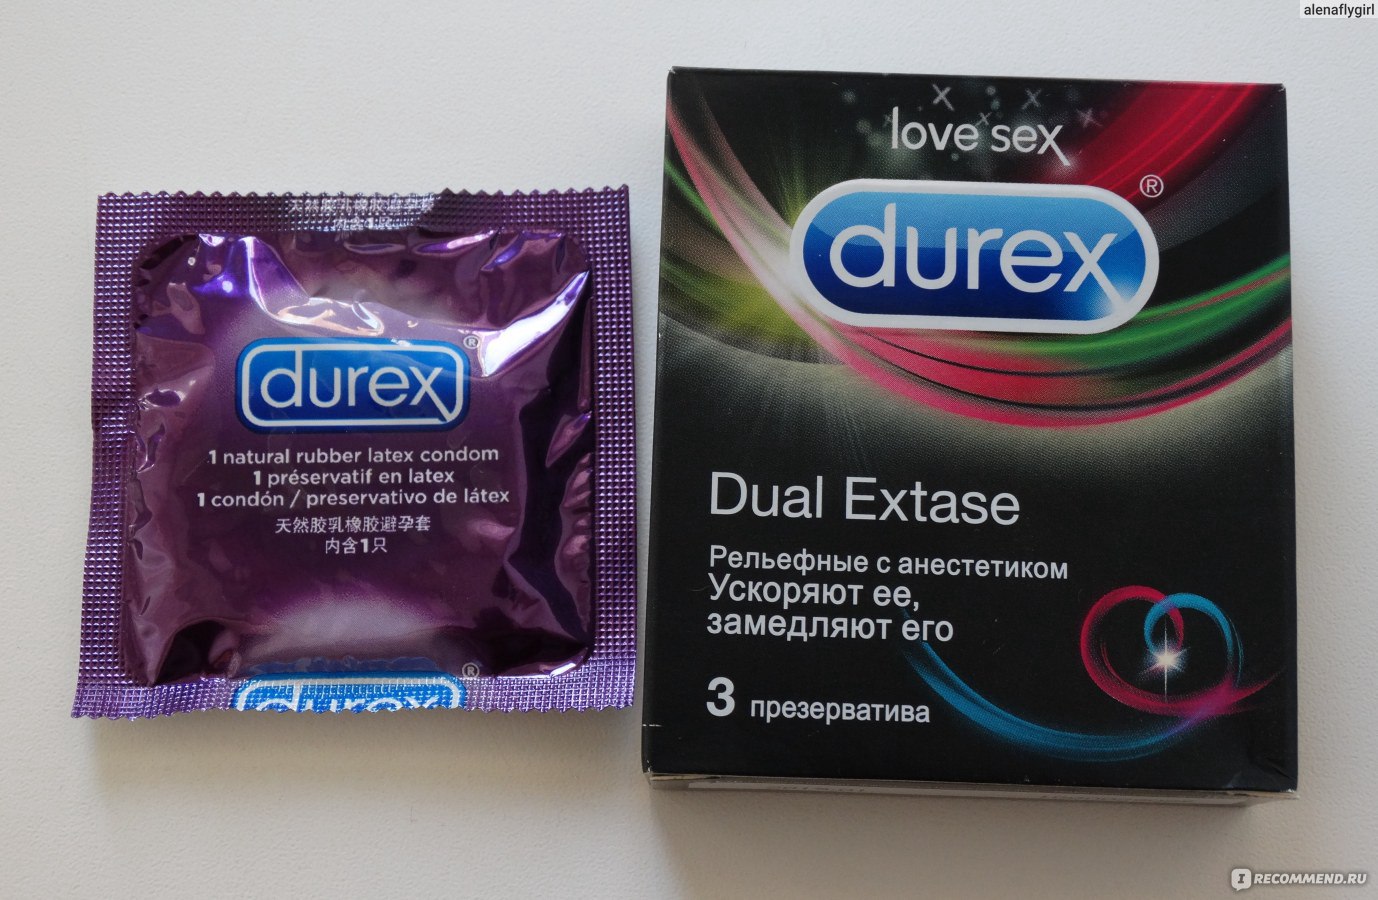 Как выбрать презервативы для орального секса?